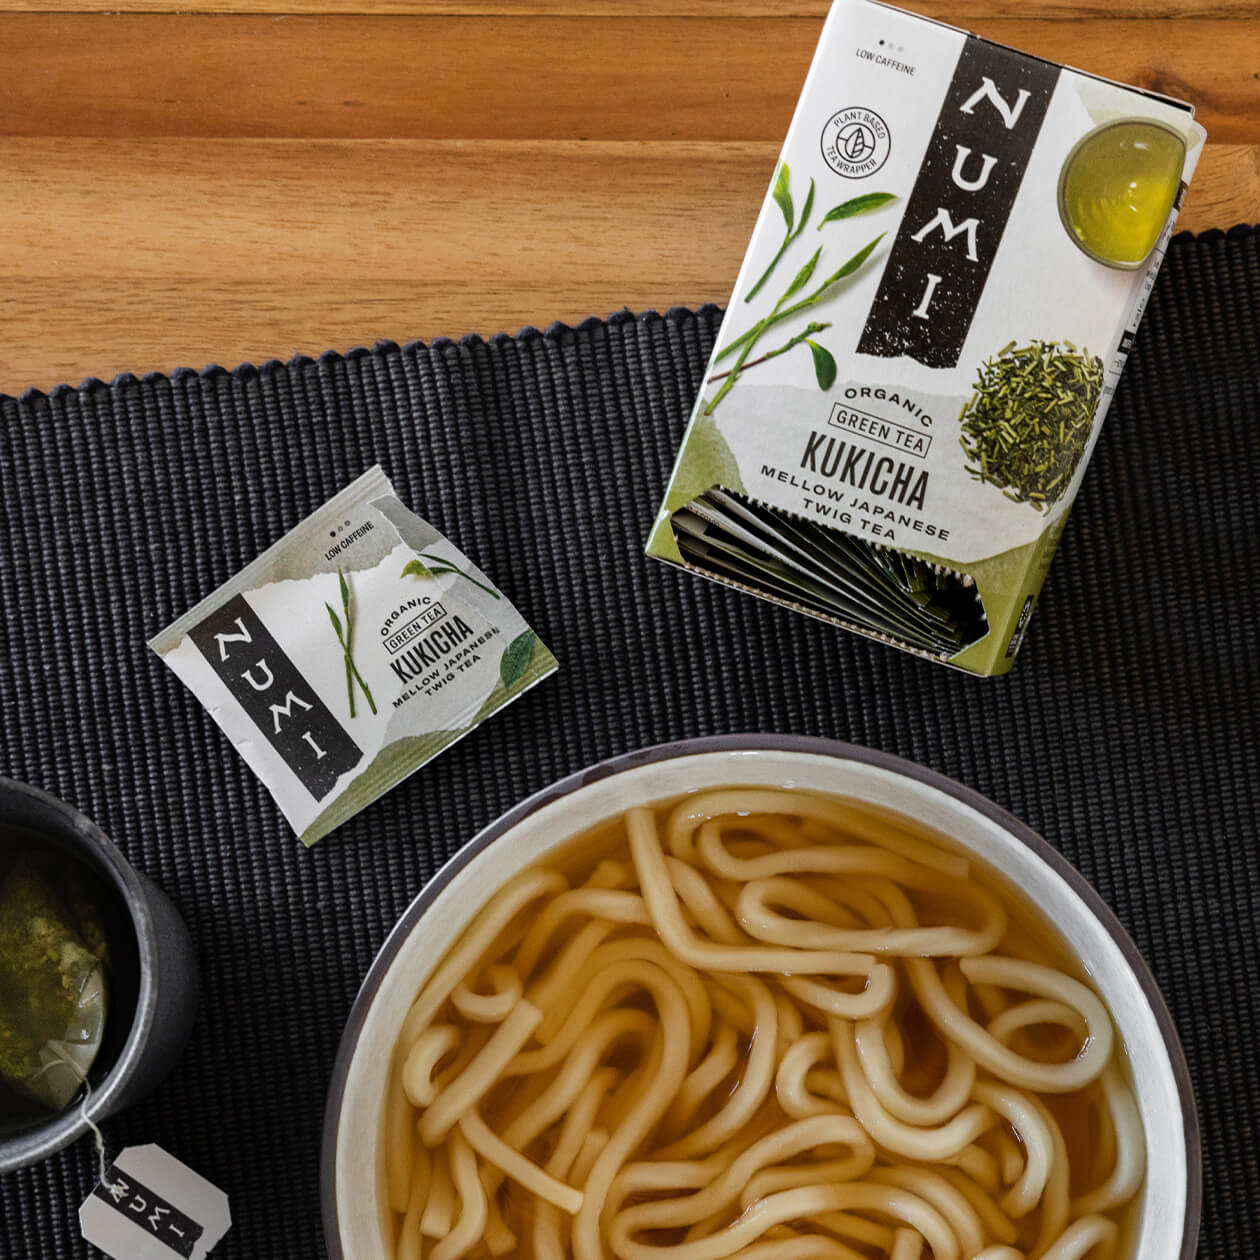 A box of Kukicha tea next to a bowl of noodle soup